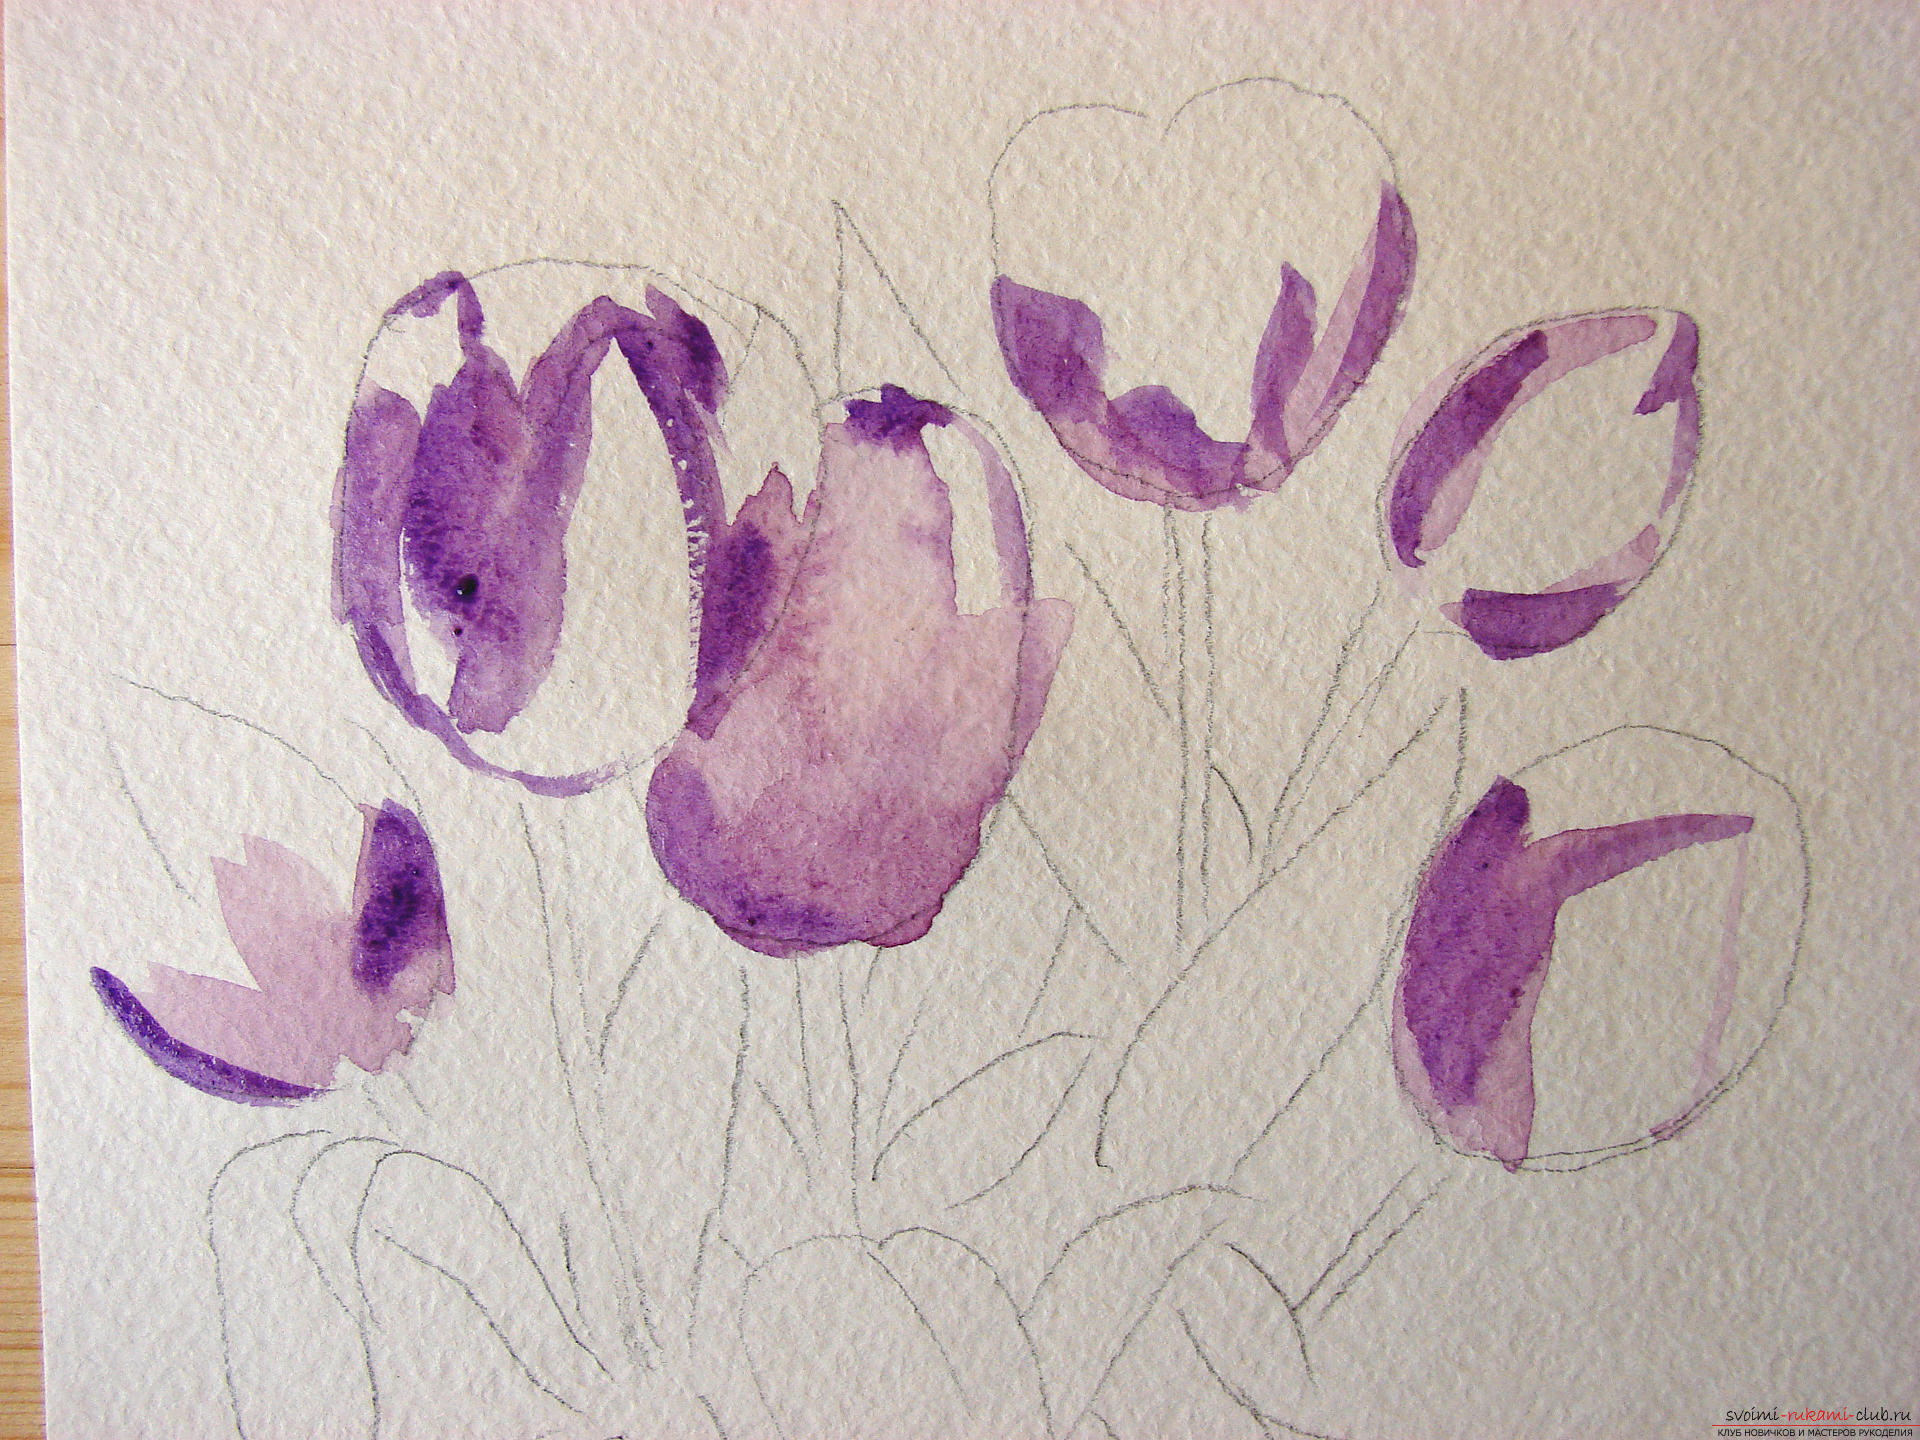 Мастер-класс по рисованию с фото научит как нарисовать цветы, подробно описав как рисуются тюльпаны поэтапно.. Фото №3